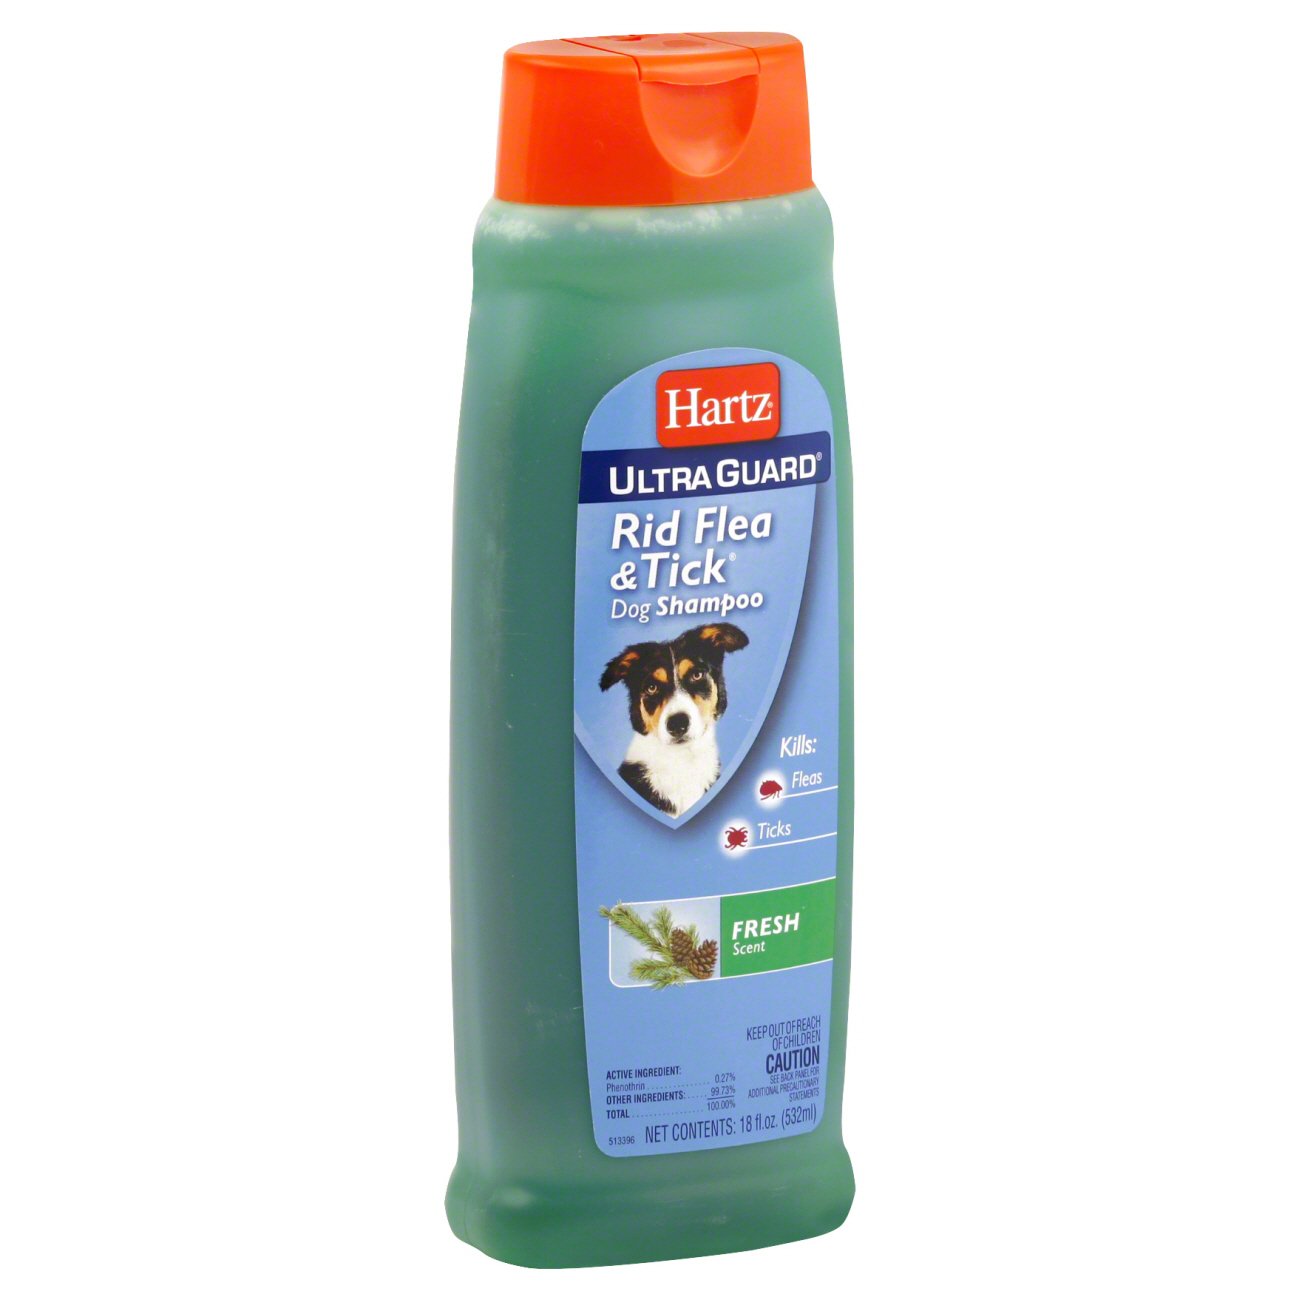 shampoo for ticks for dogs